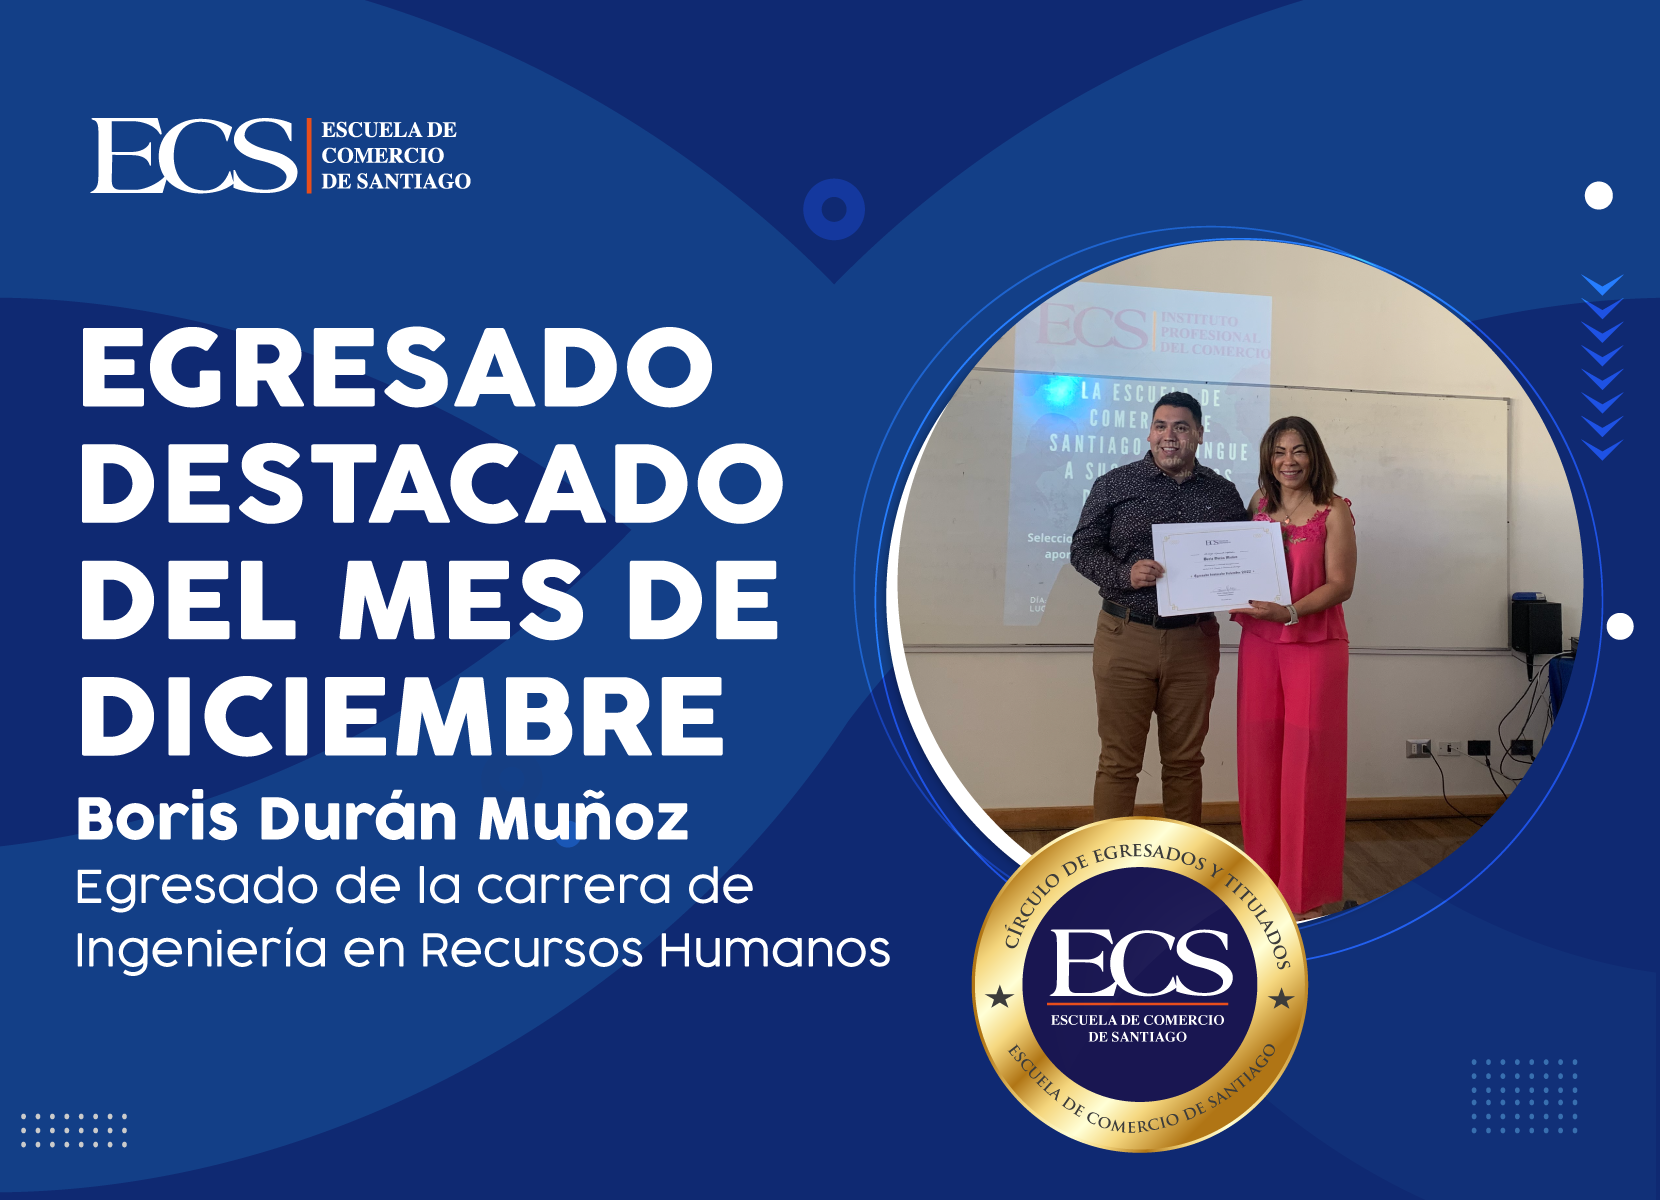 Escuela de Comercio - Egresado destacado mes de diciembre, Sr. Boris Durán Muñoz.